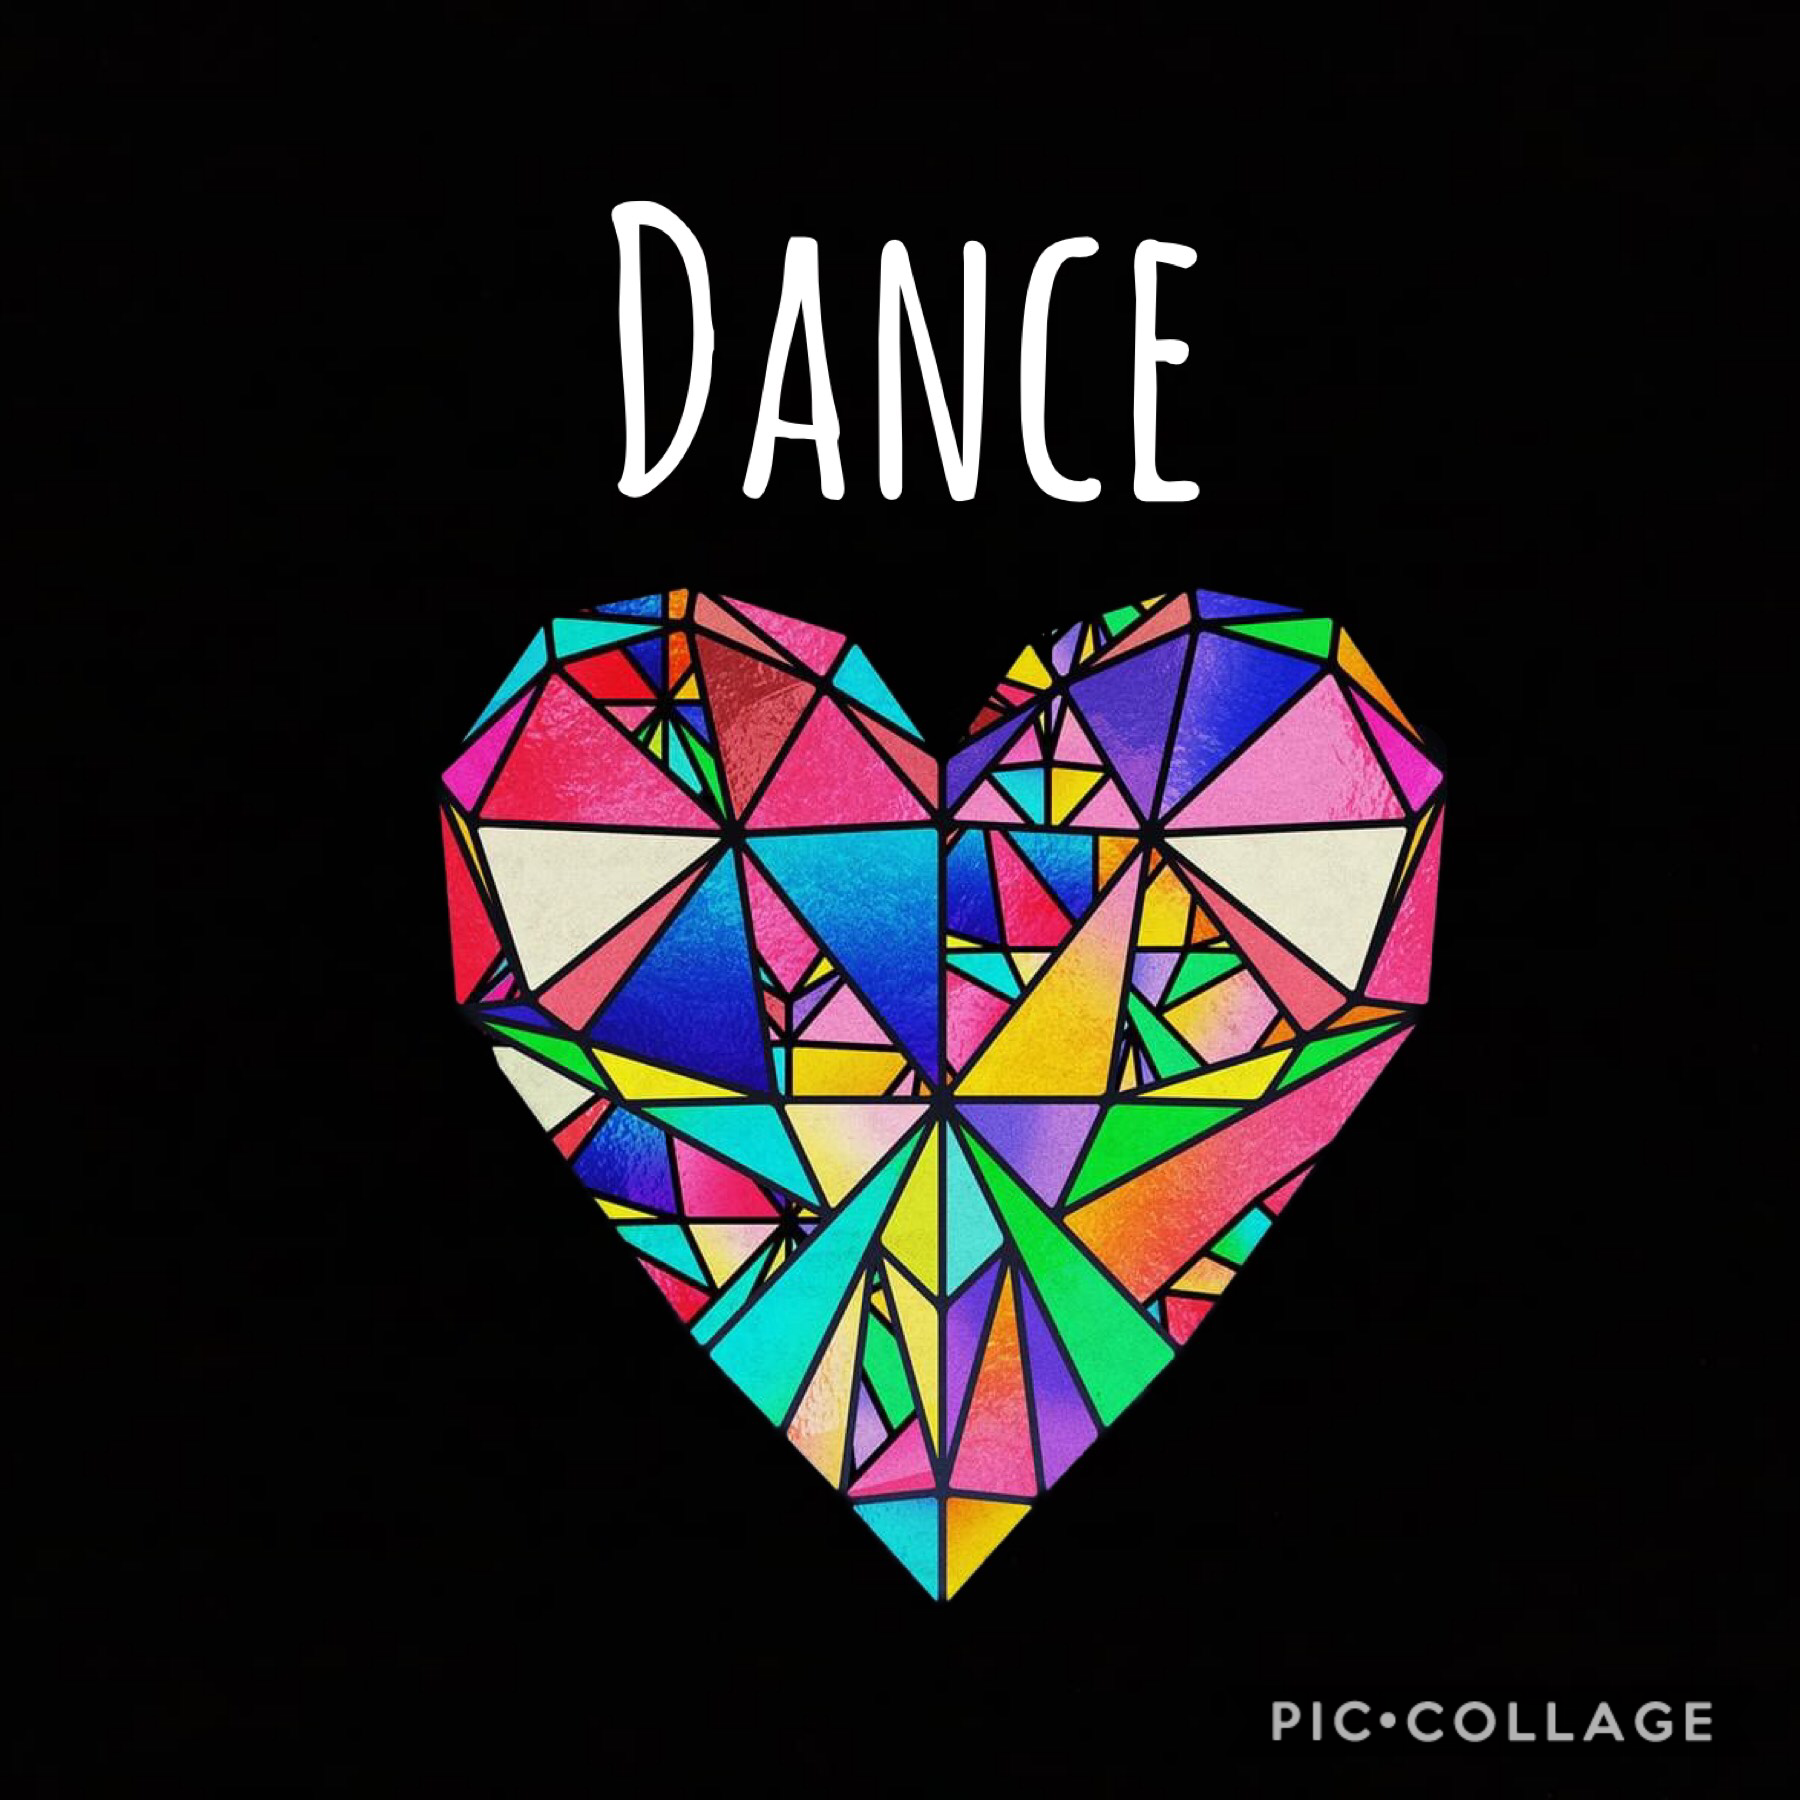 I love dance